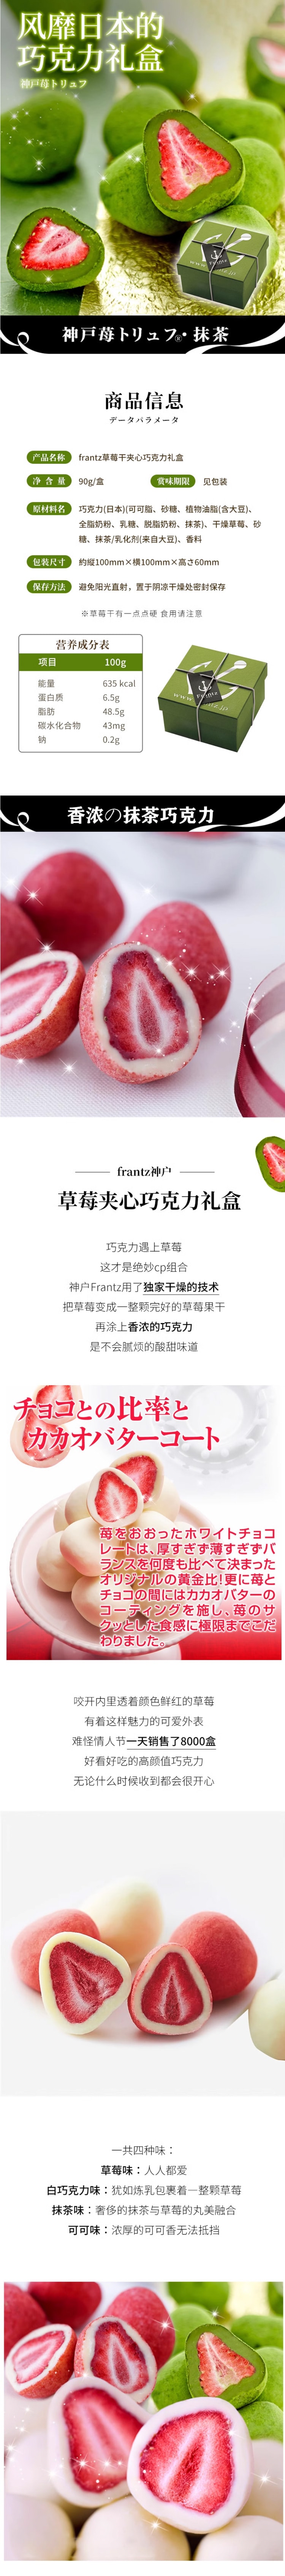 【日本直效郵件】神戶FRANTZ 草莓夾心松露白巧克力 90g